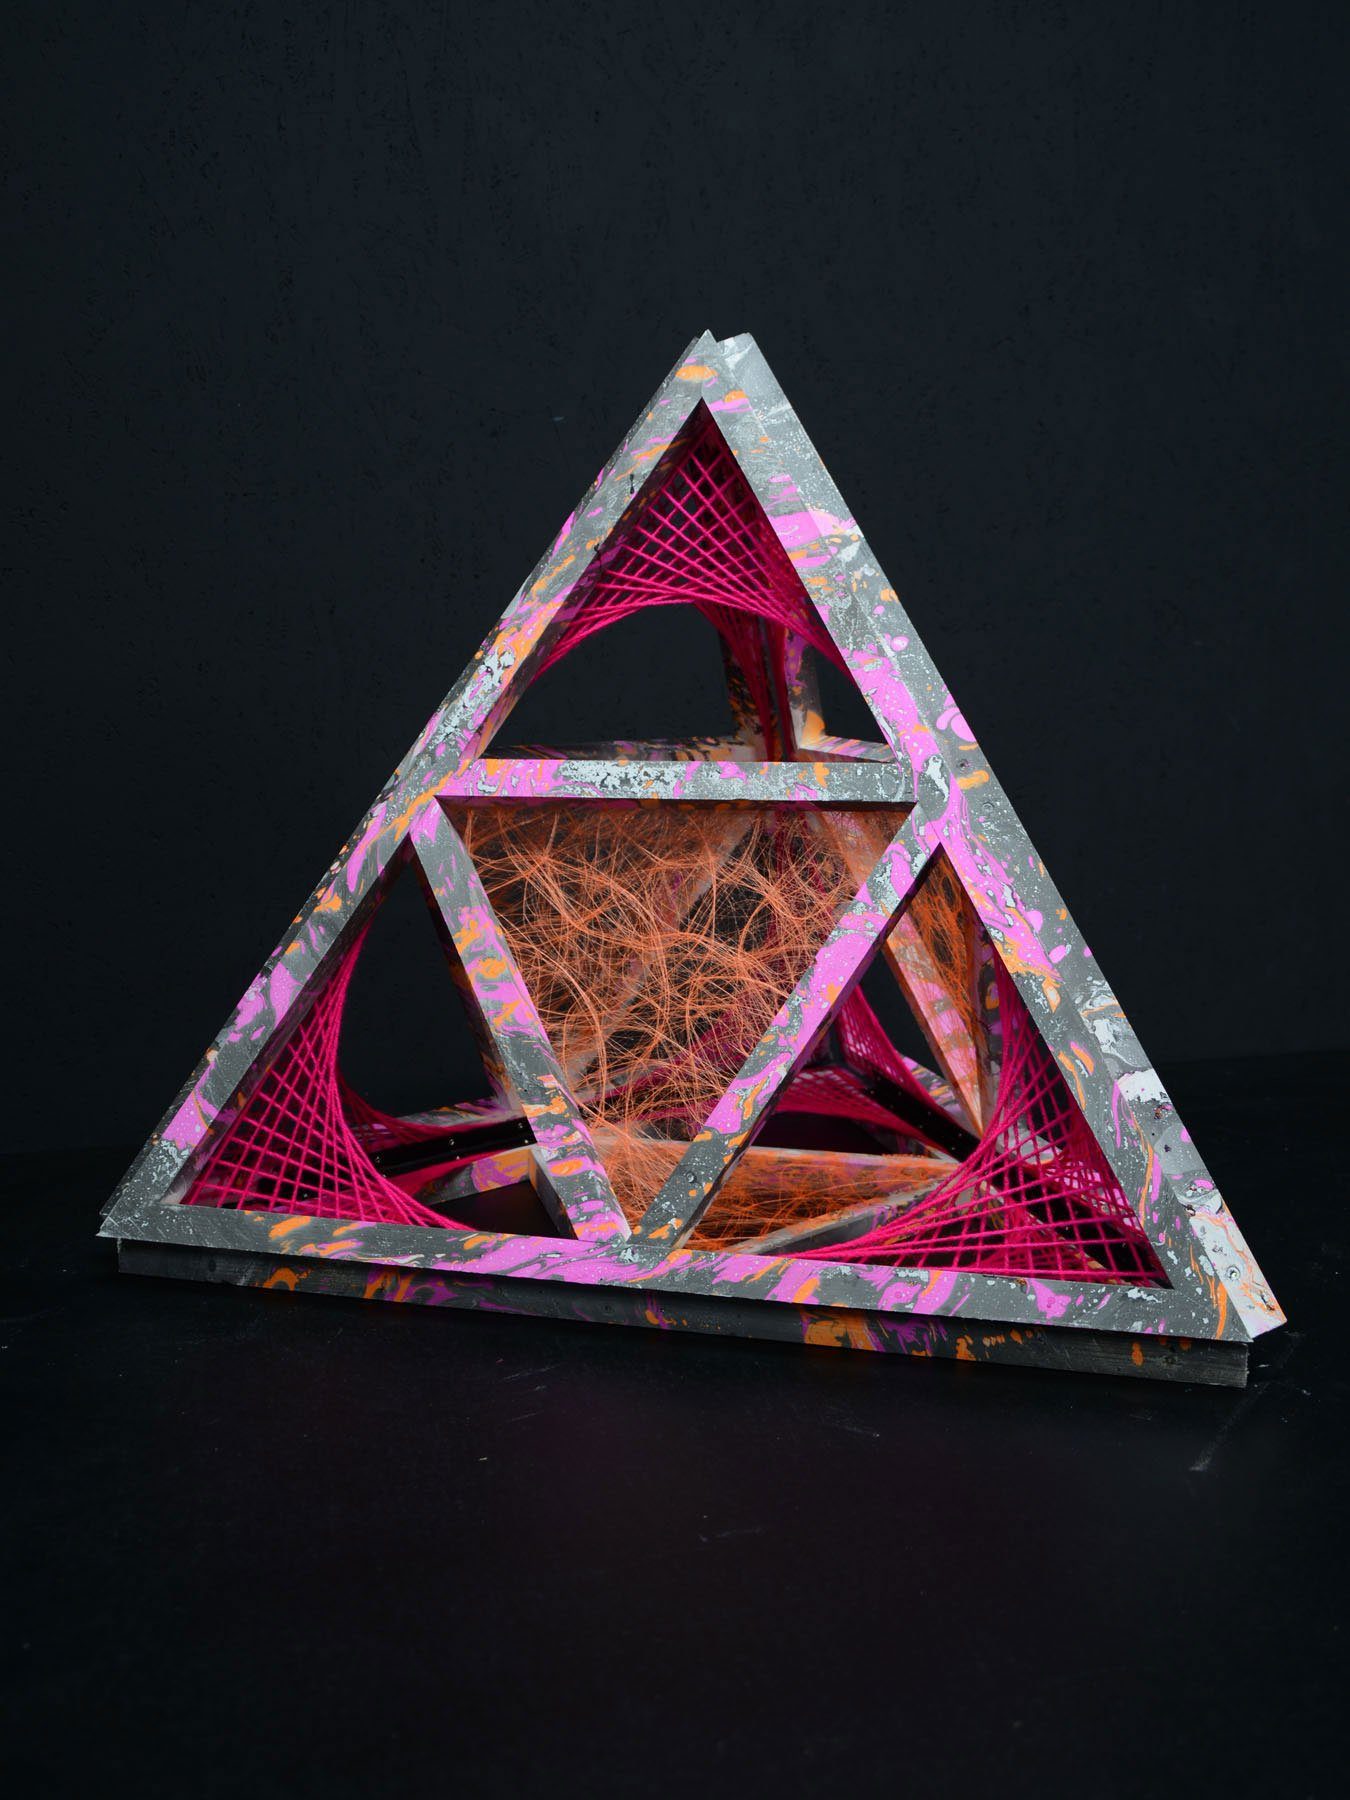 PSYWORK Dekoobjekt Schwarzlicht 3D StringArt Pyramide "Deep Pink Journey", 1,30m, UV-aktiv, leuchtet unter Schwarzlicht